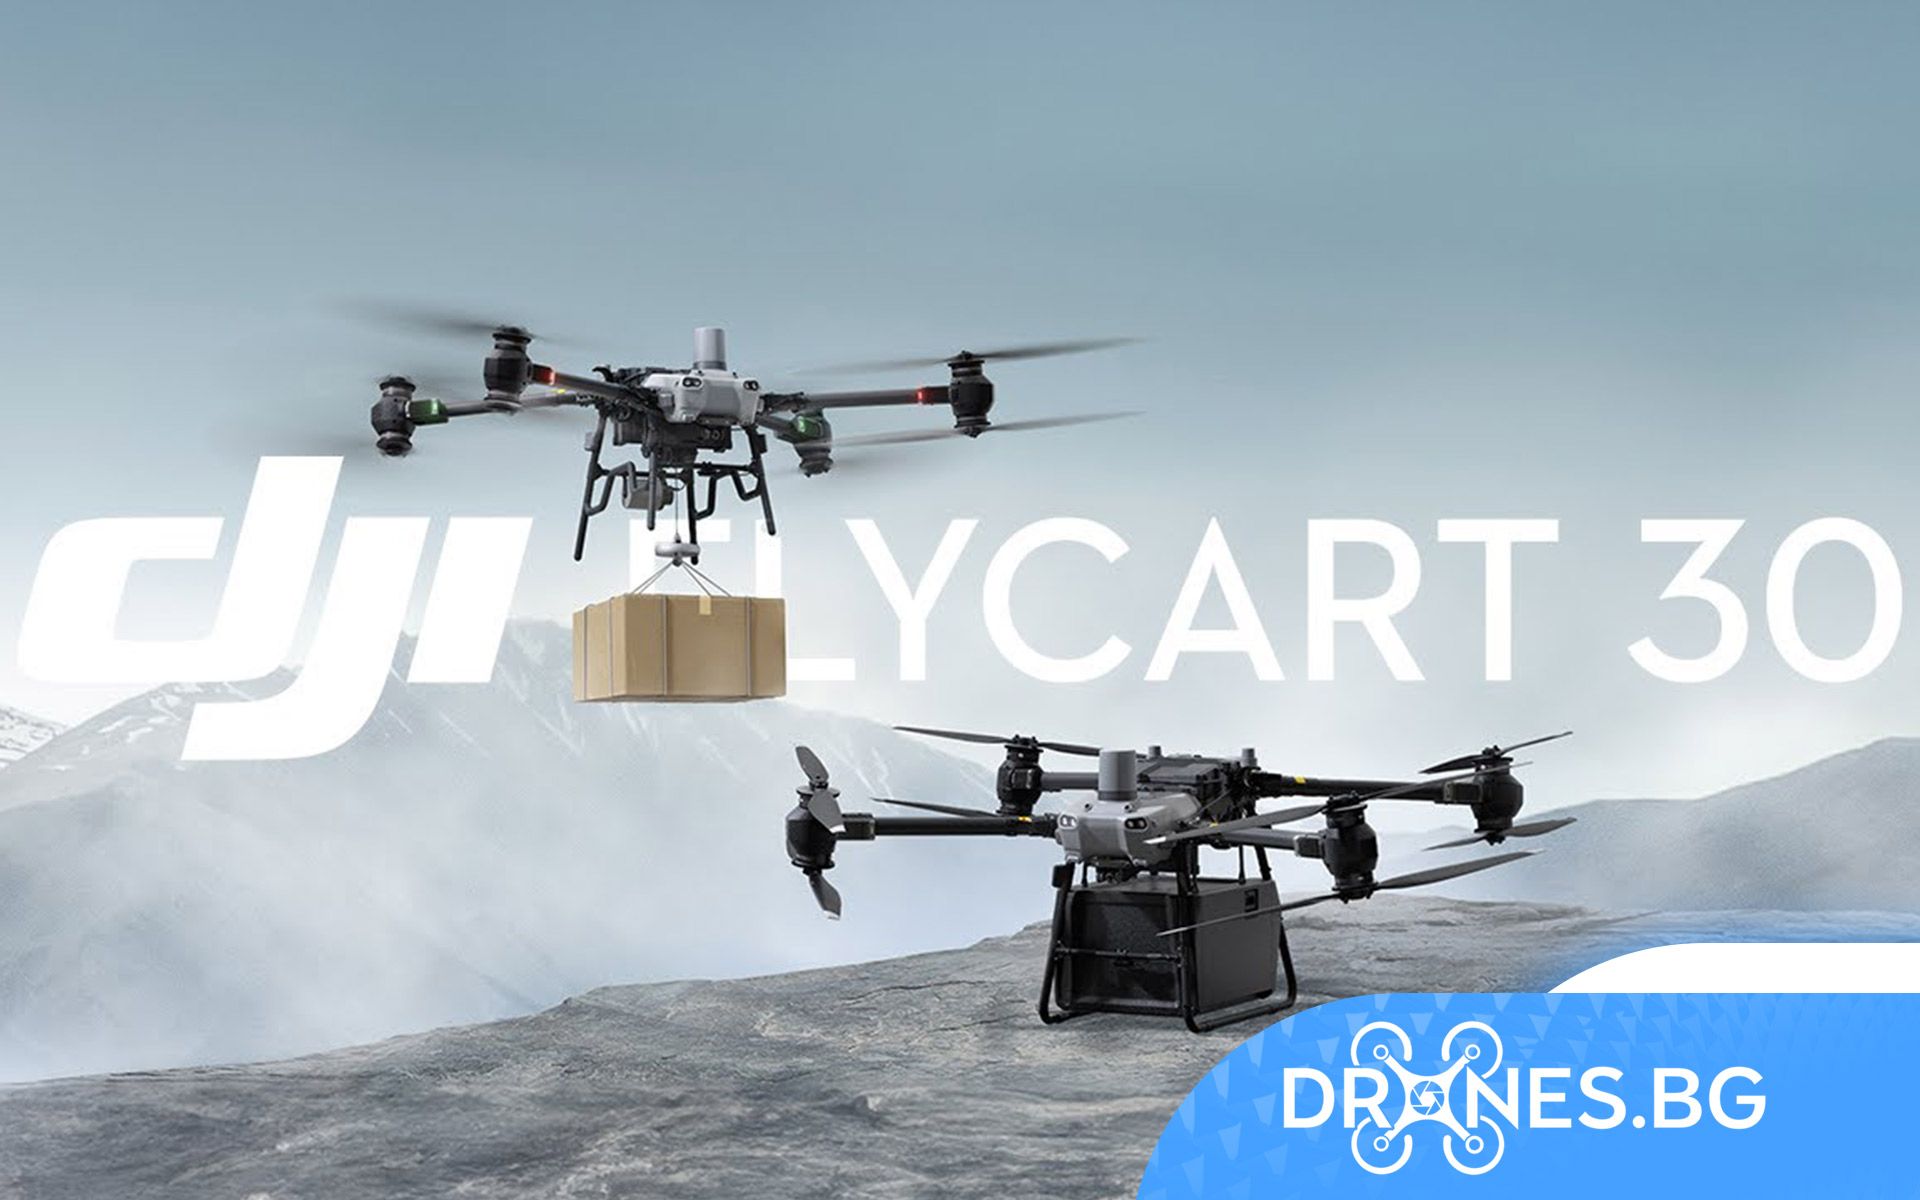 DJI представи FlyCart 30 – първият дрон за доставки